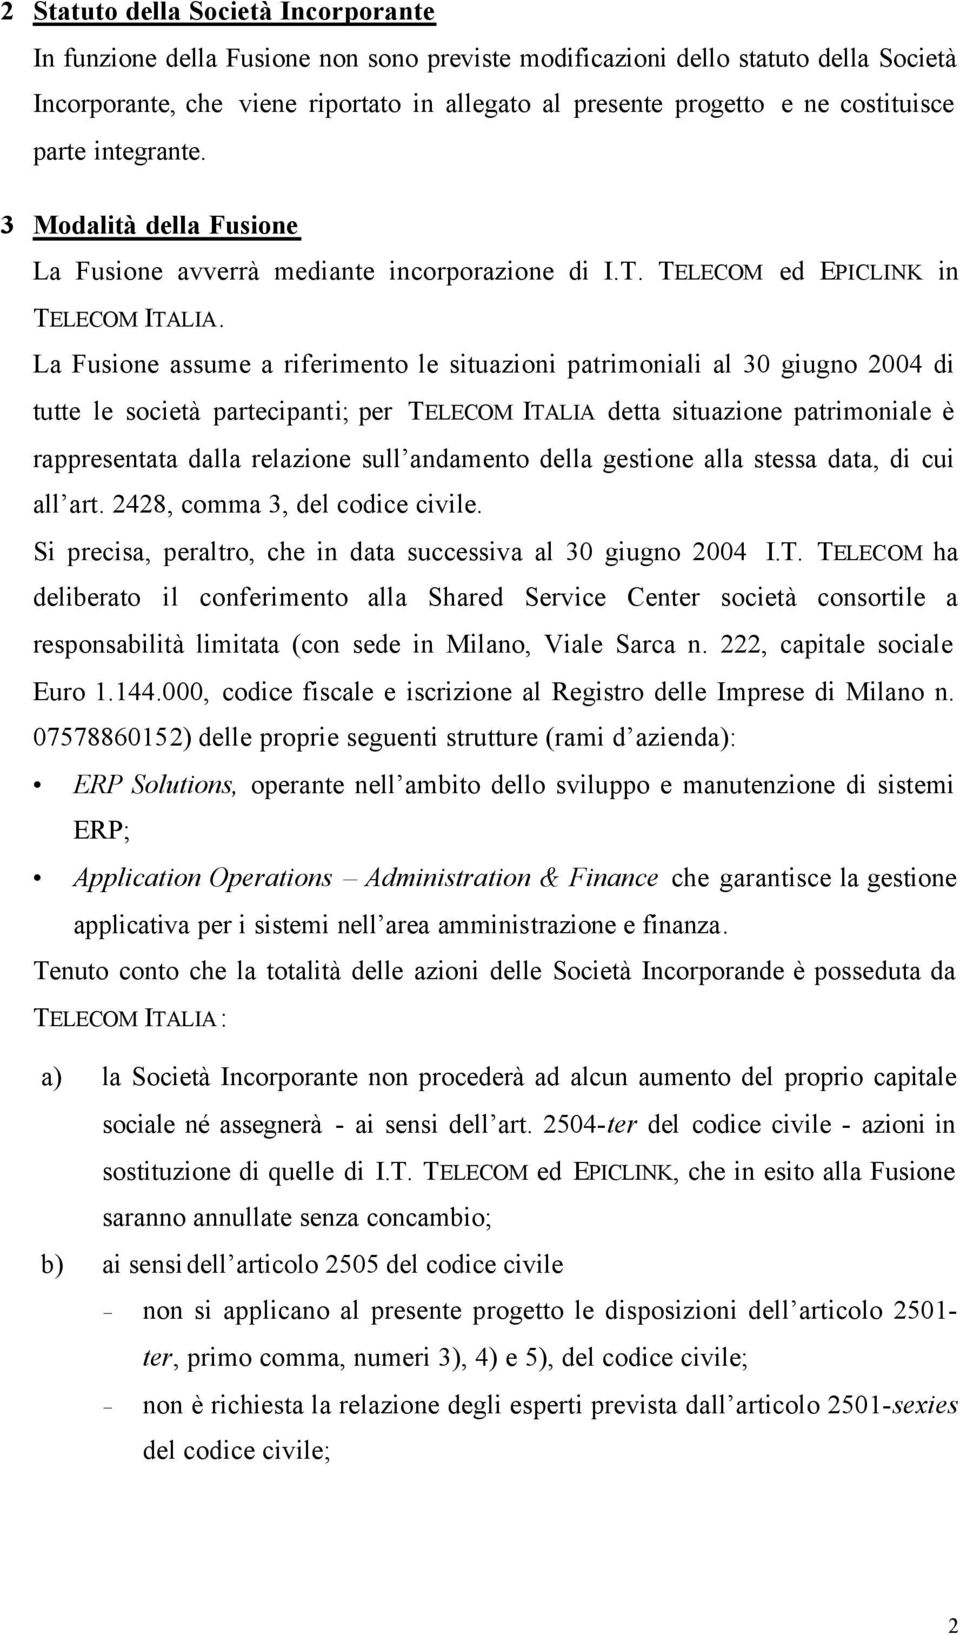 La Fusione assume a riferimento le situazioni patrimoniali al 30 giugno 2004 di tutte le società partecipanti; per TELECOM ITALIA detta situazione patrimoniale è rappresentata dalla relazione sull